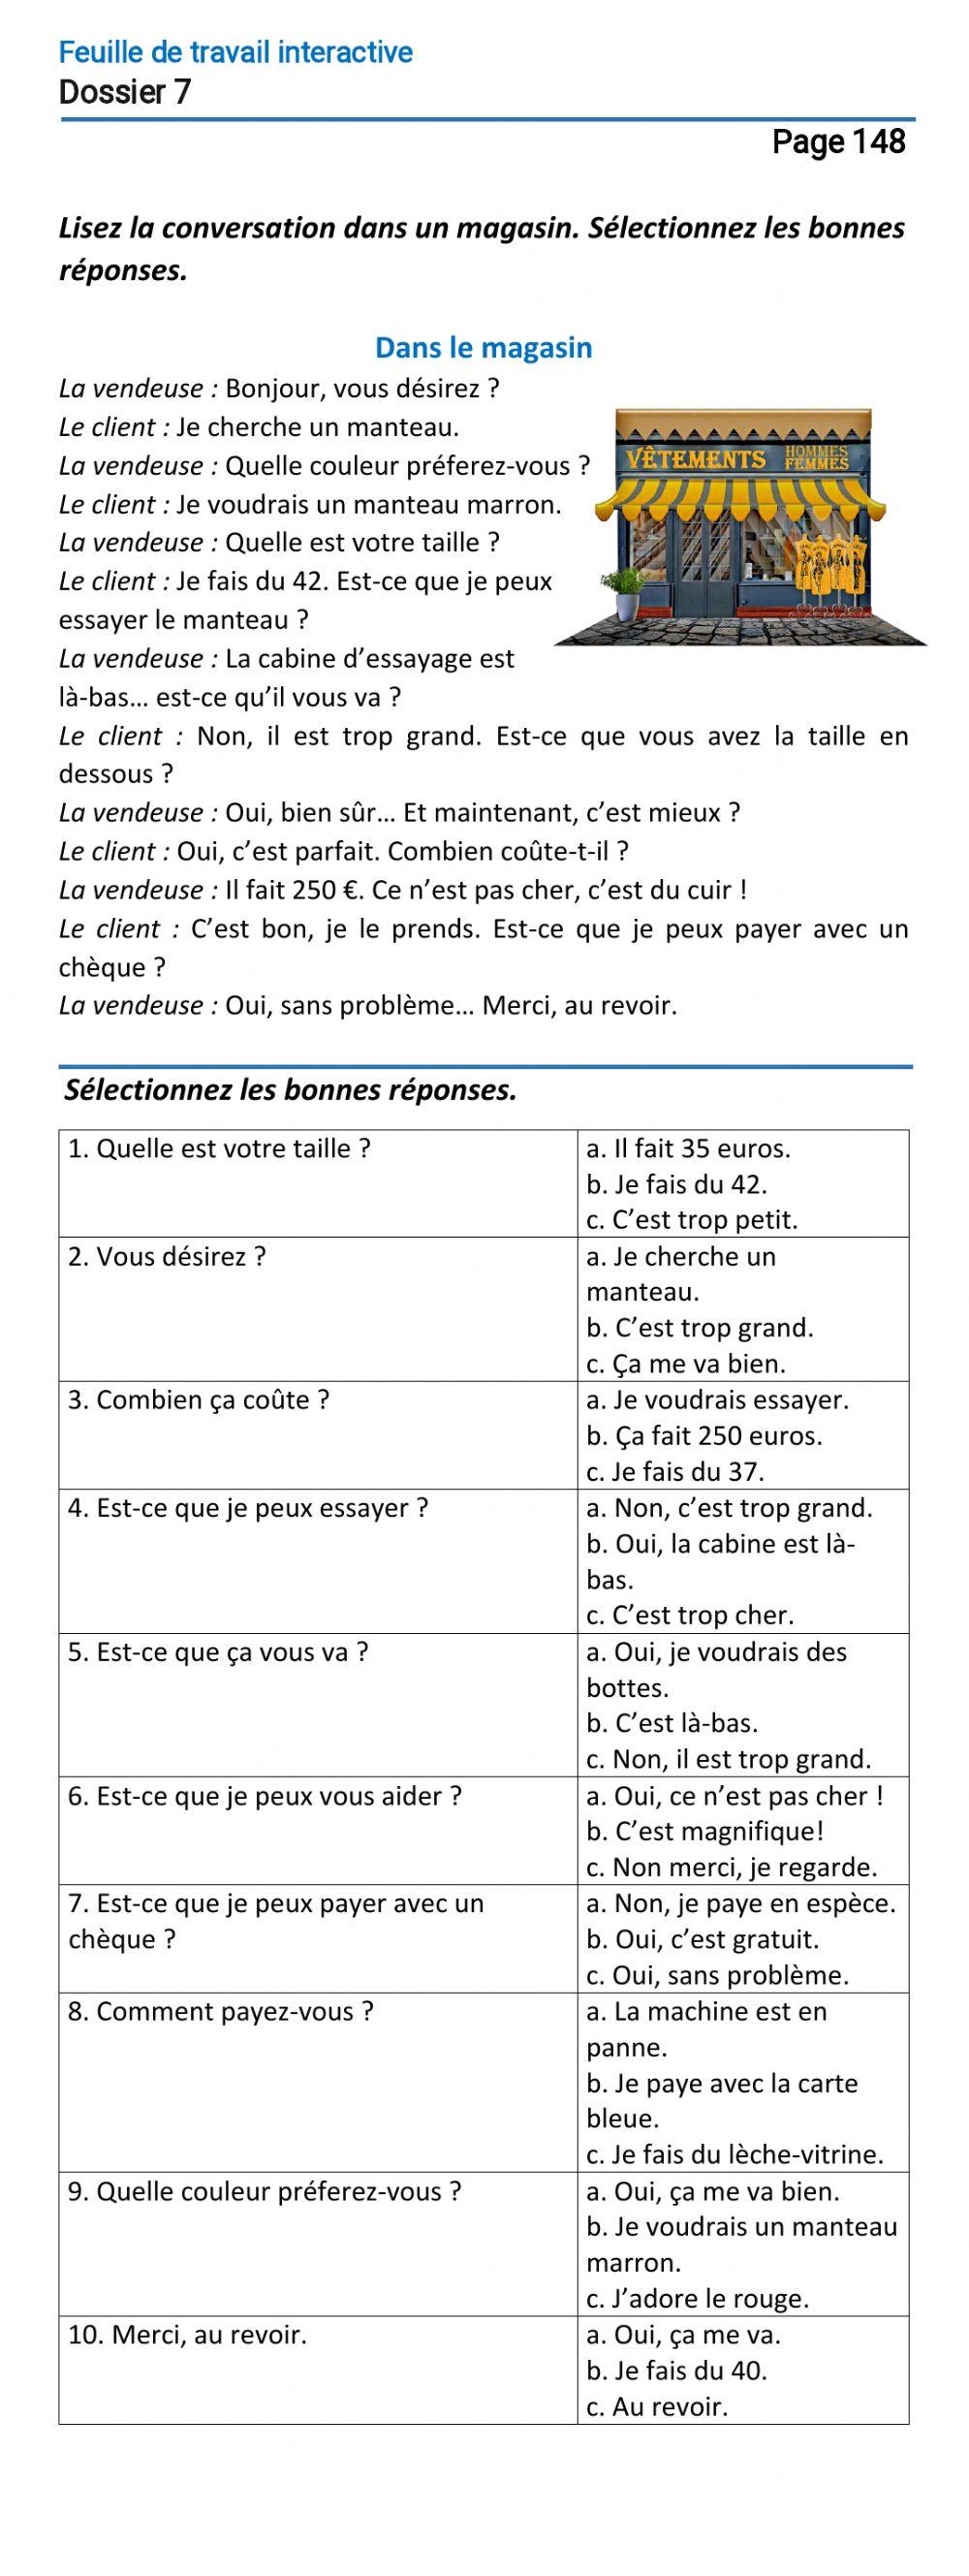 Le français-9 (повыш.)-Dossier 7-Page 148